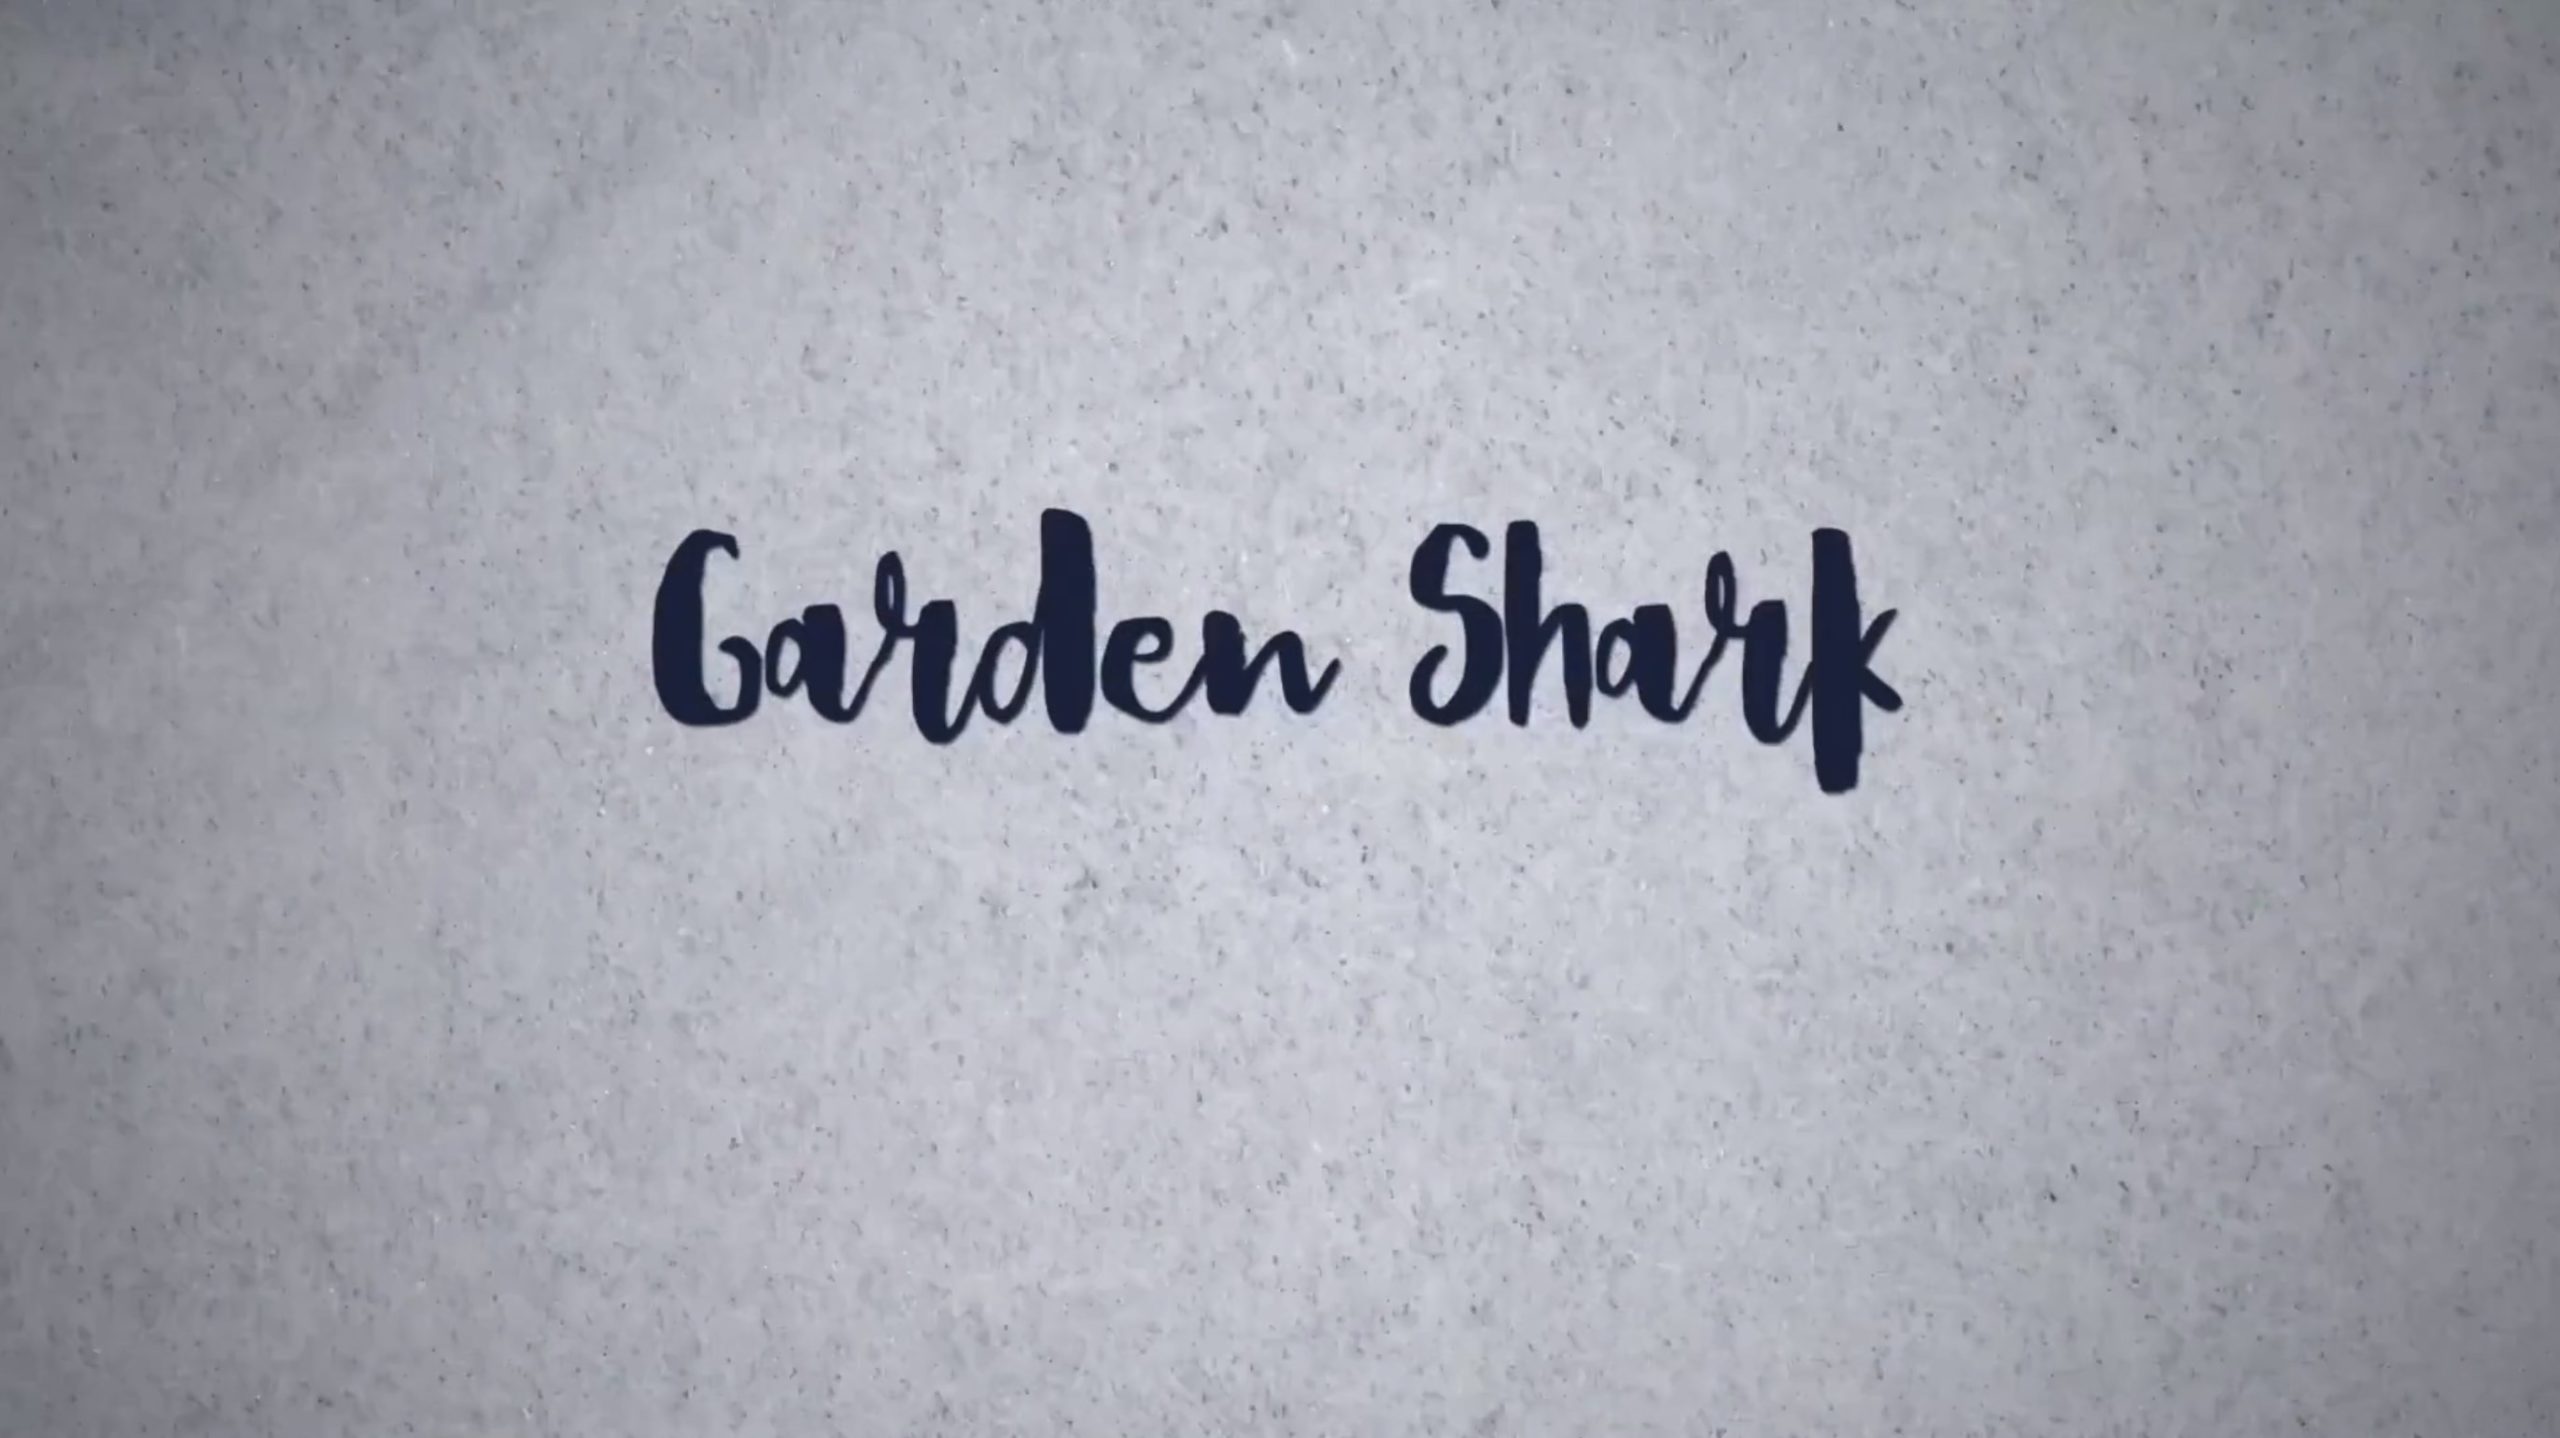 Garden-Shark-1